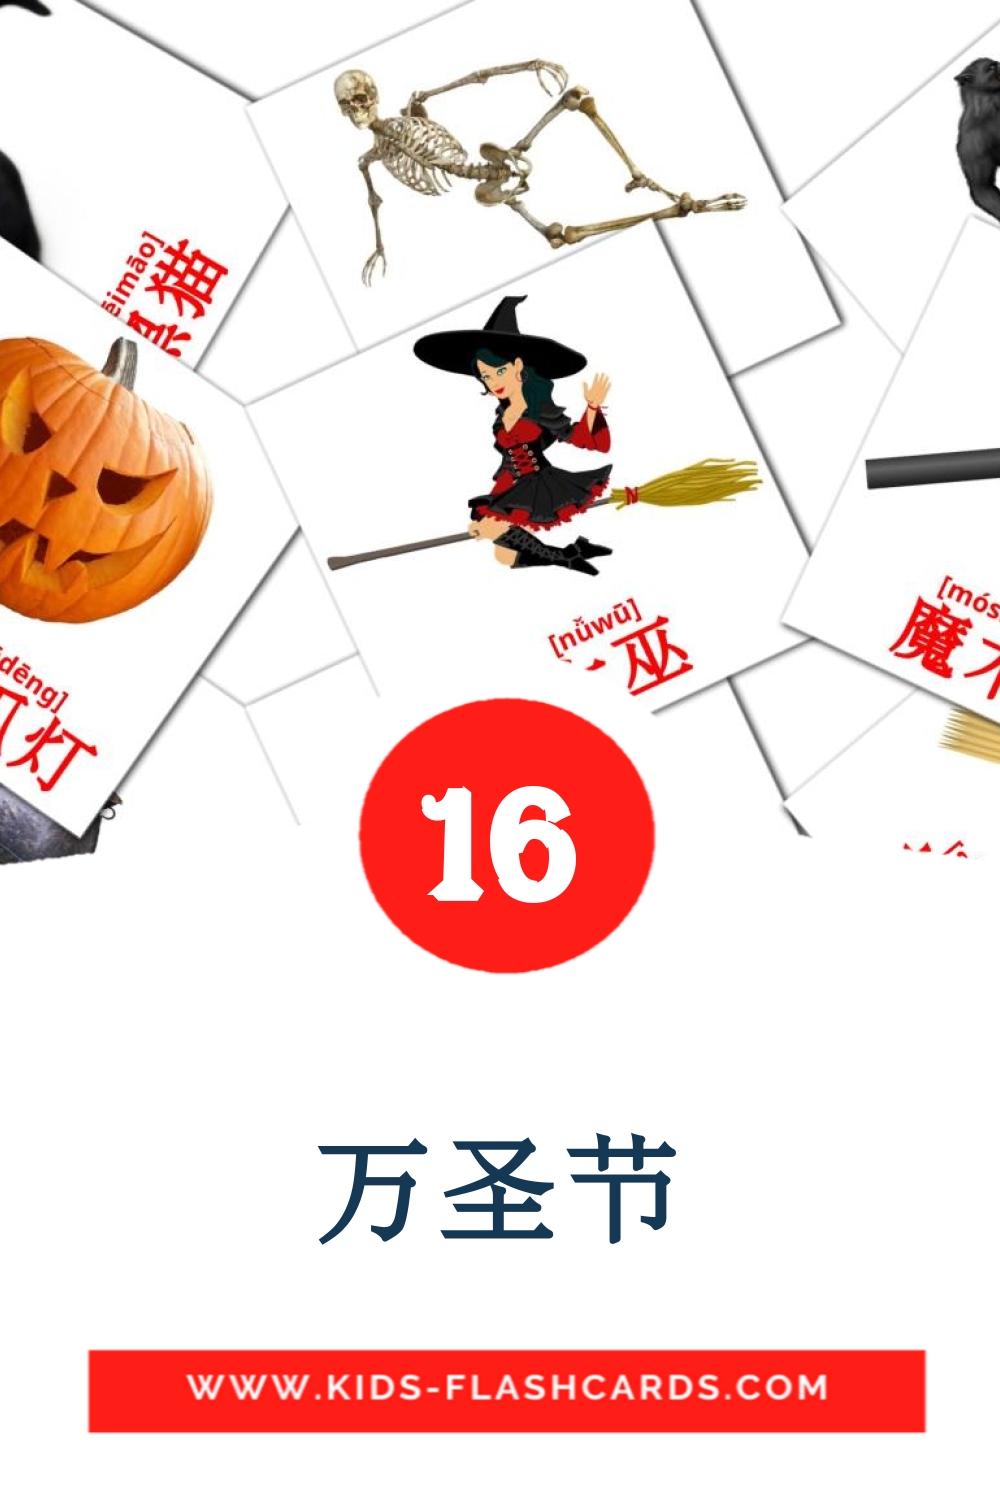 16 carte illustrate di 万圣节 per la scuola materna in cinese(semplificato)